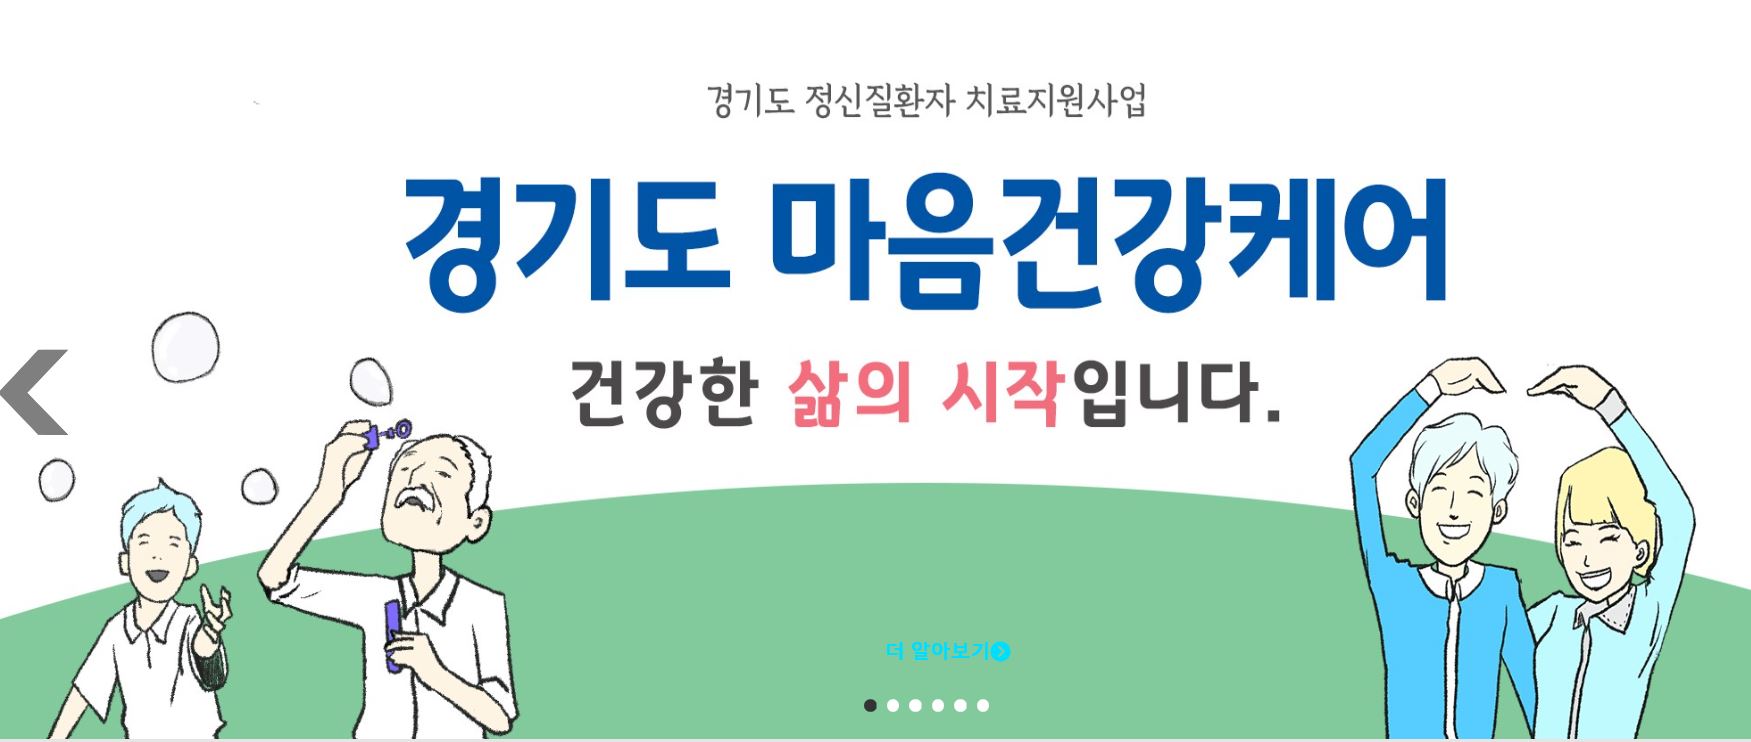 [정신과치료비 지원] 경기도 마음건강 케어